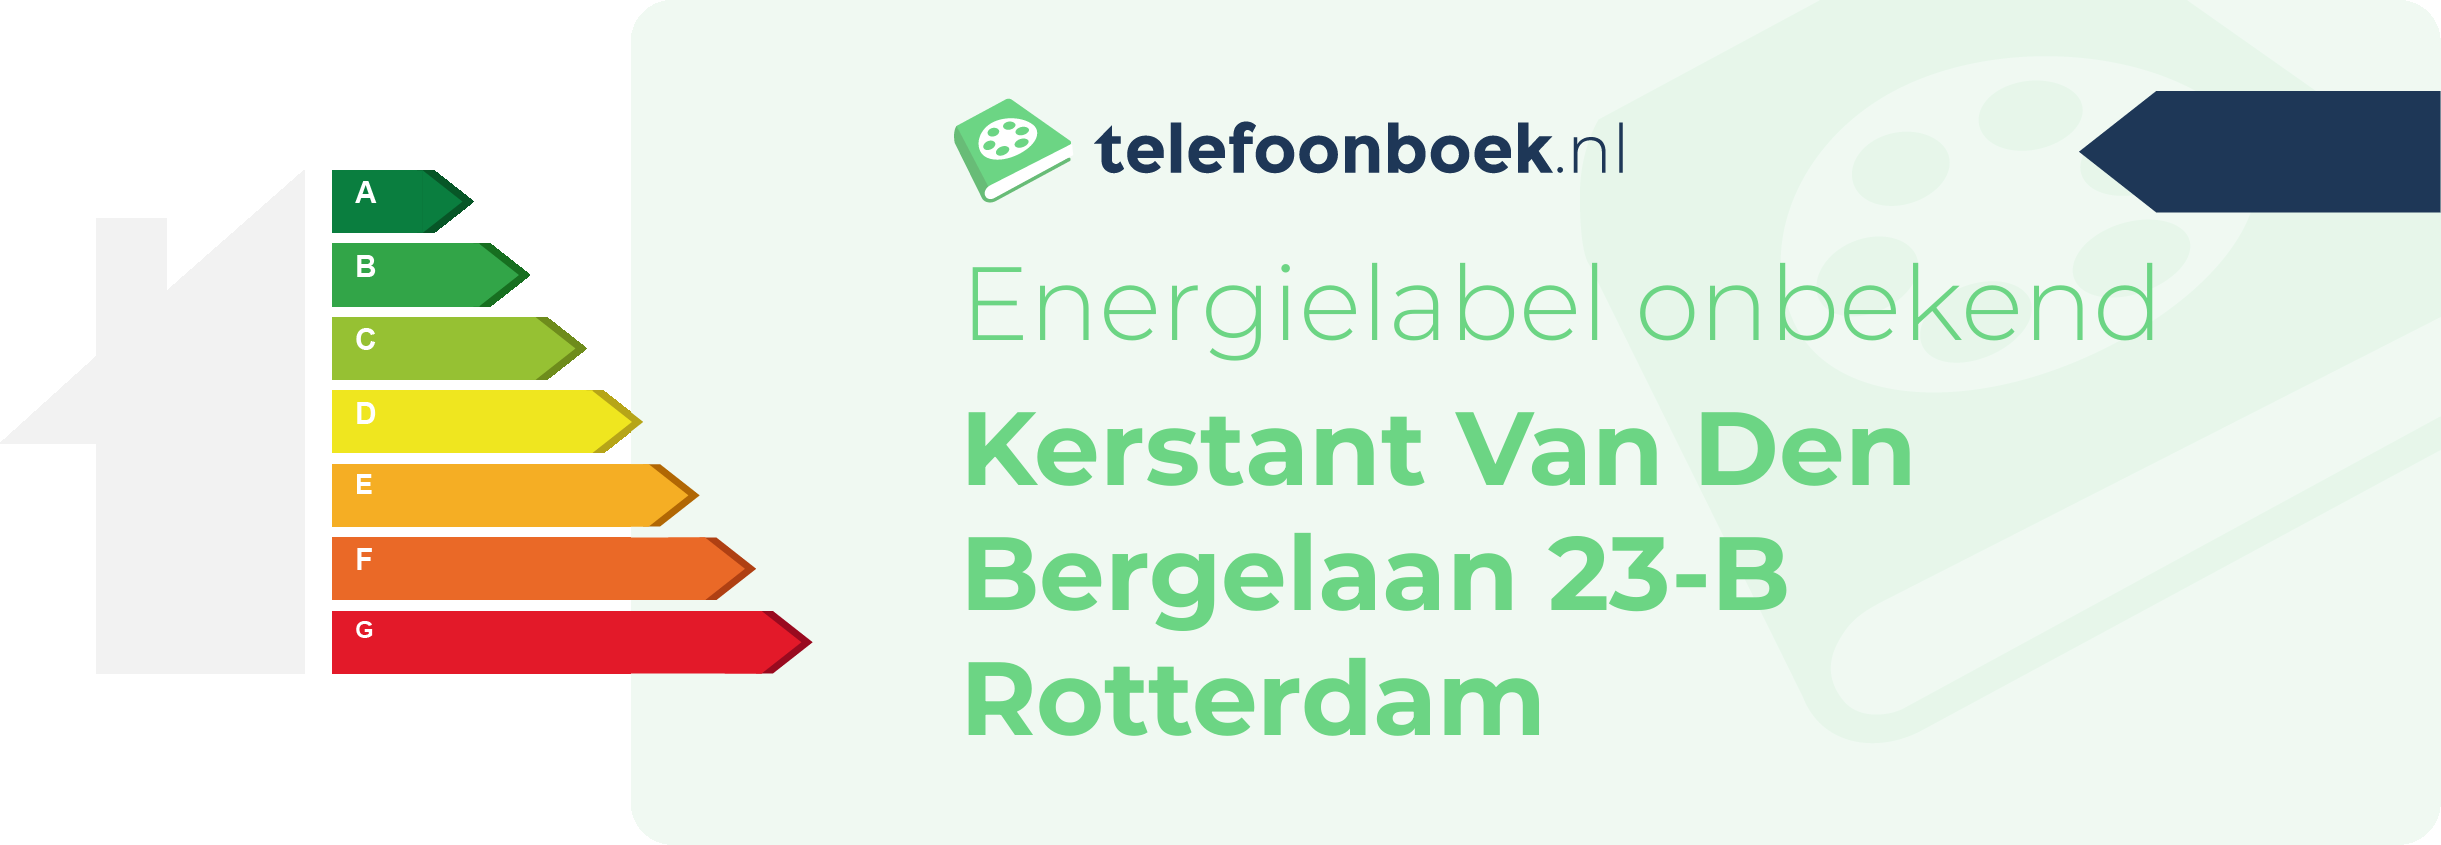 Energielabel Kerstant Van Den Bergelaan 23-B Rotterdam